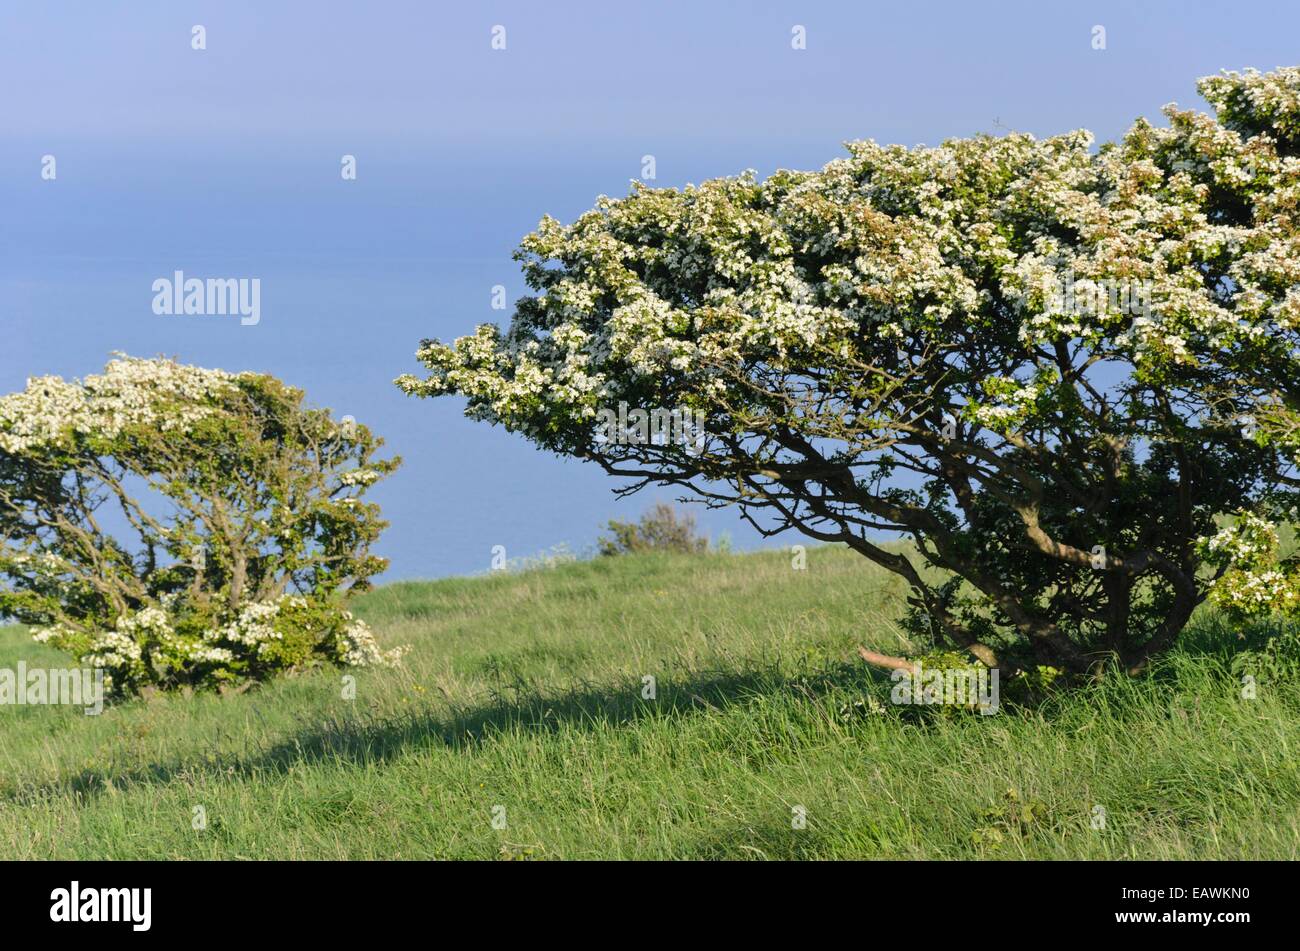 Comunes de espino albar (Crataegus monogyna), Beachy Head, South Downs national park, Gran Bretaña Foto de stock